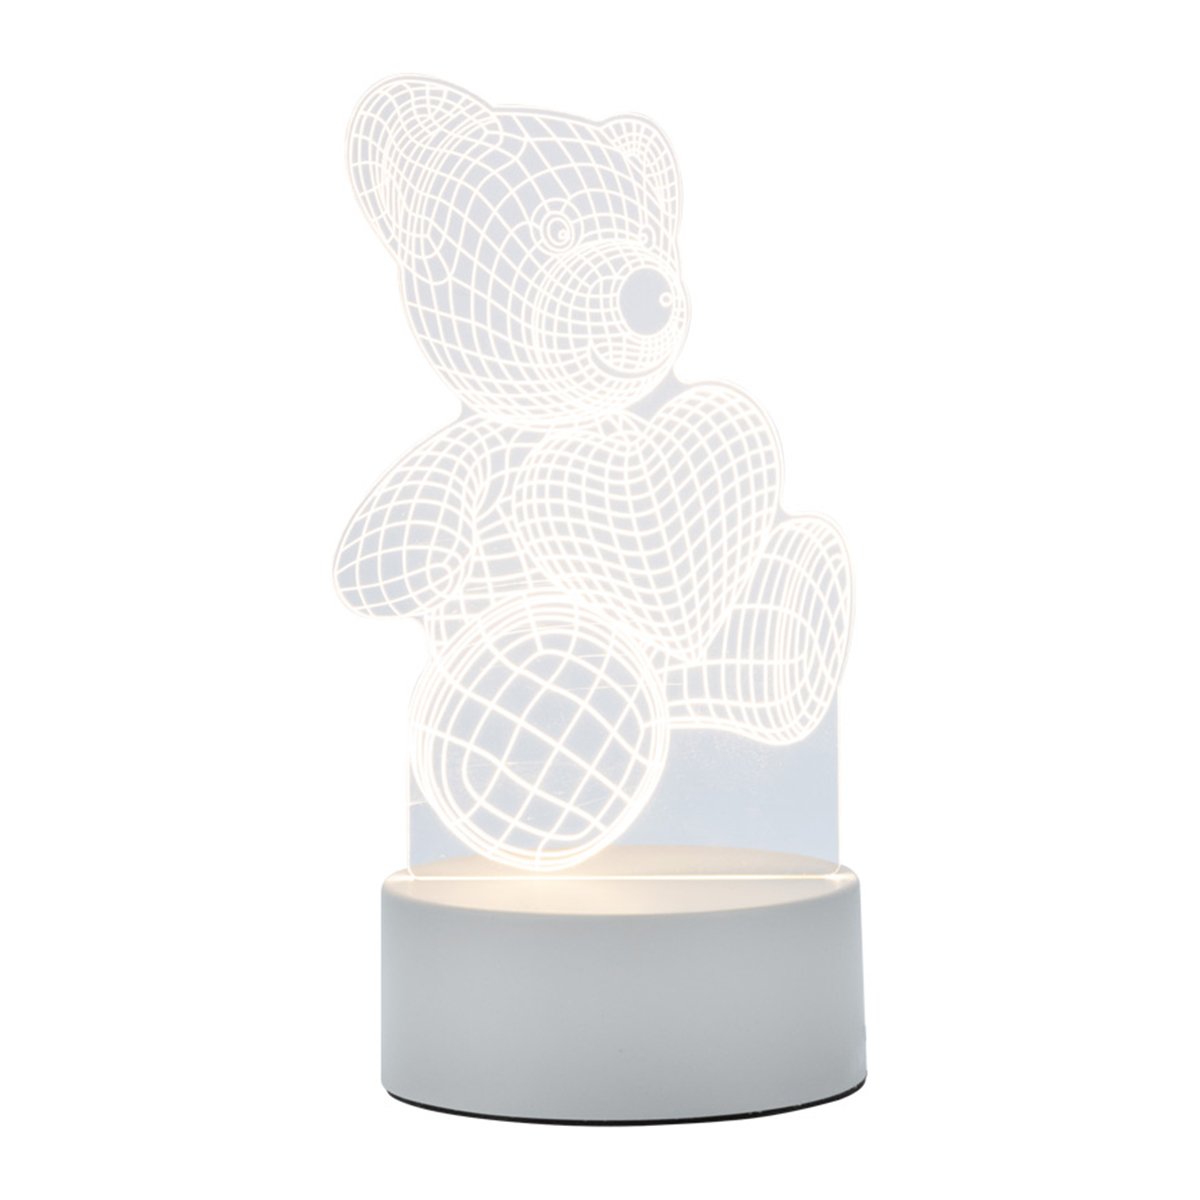 Ночник светодиодный Energy EN-NL-21 3D Медвежонок 5 В 17 x 14 см светильник led медвежонок с сердцем 19х10 пвх бокс